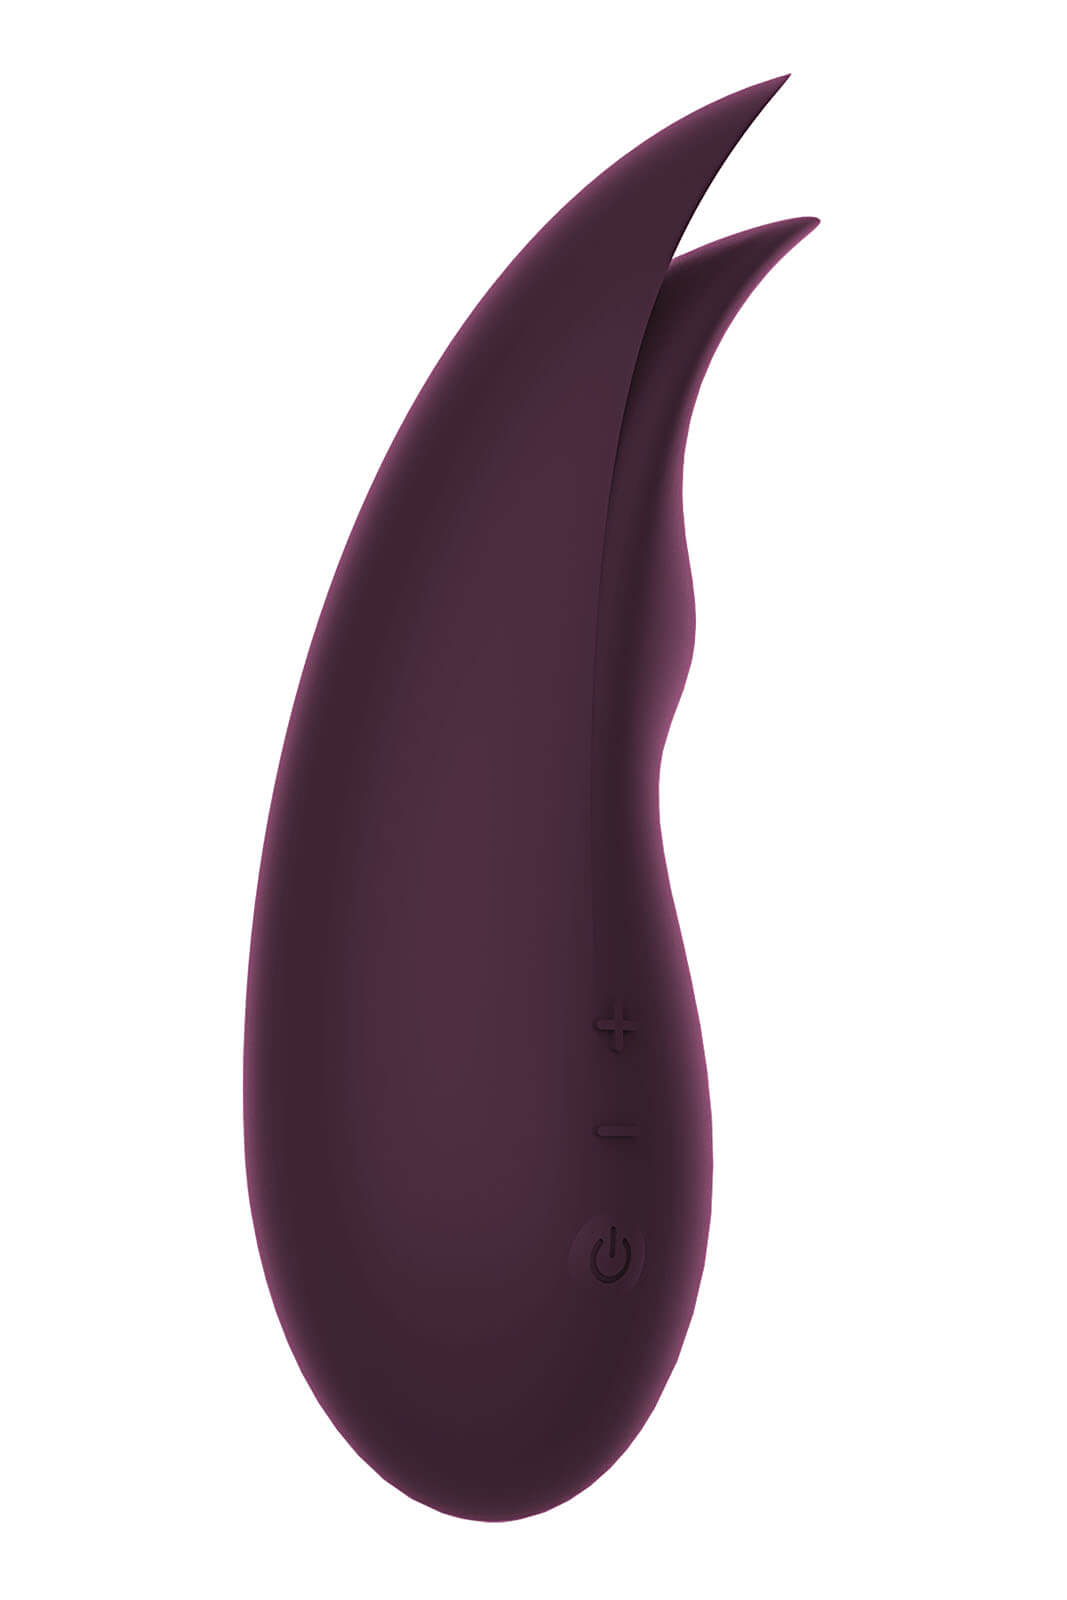 Dream Toys Essentials Fluttering Stimulator (Purple), pulzující vibrátor